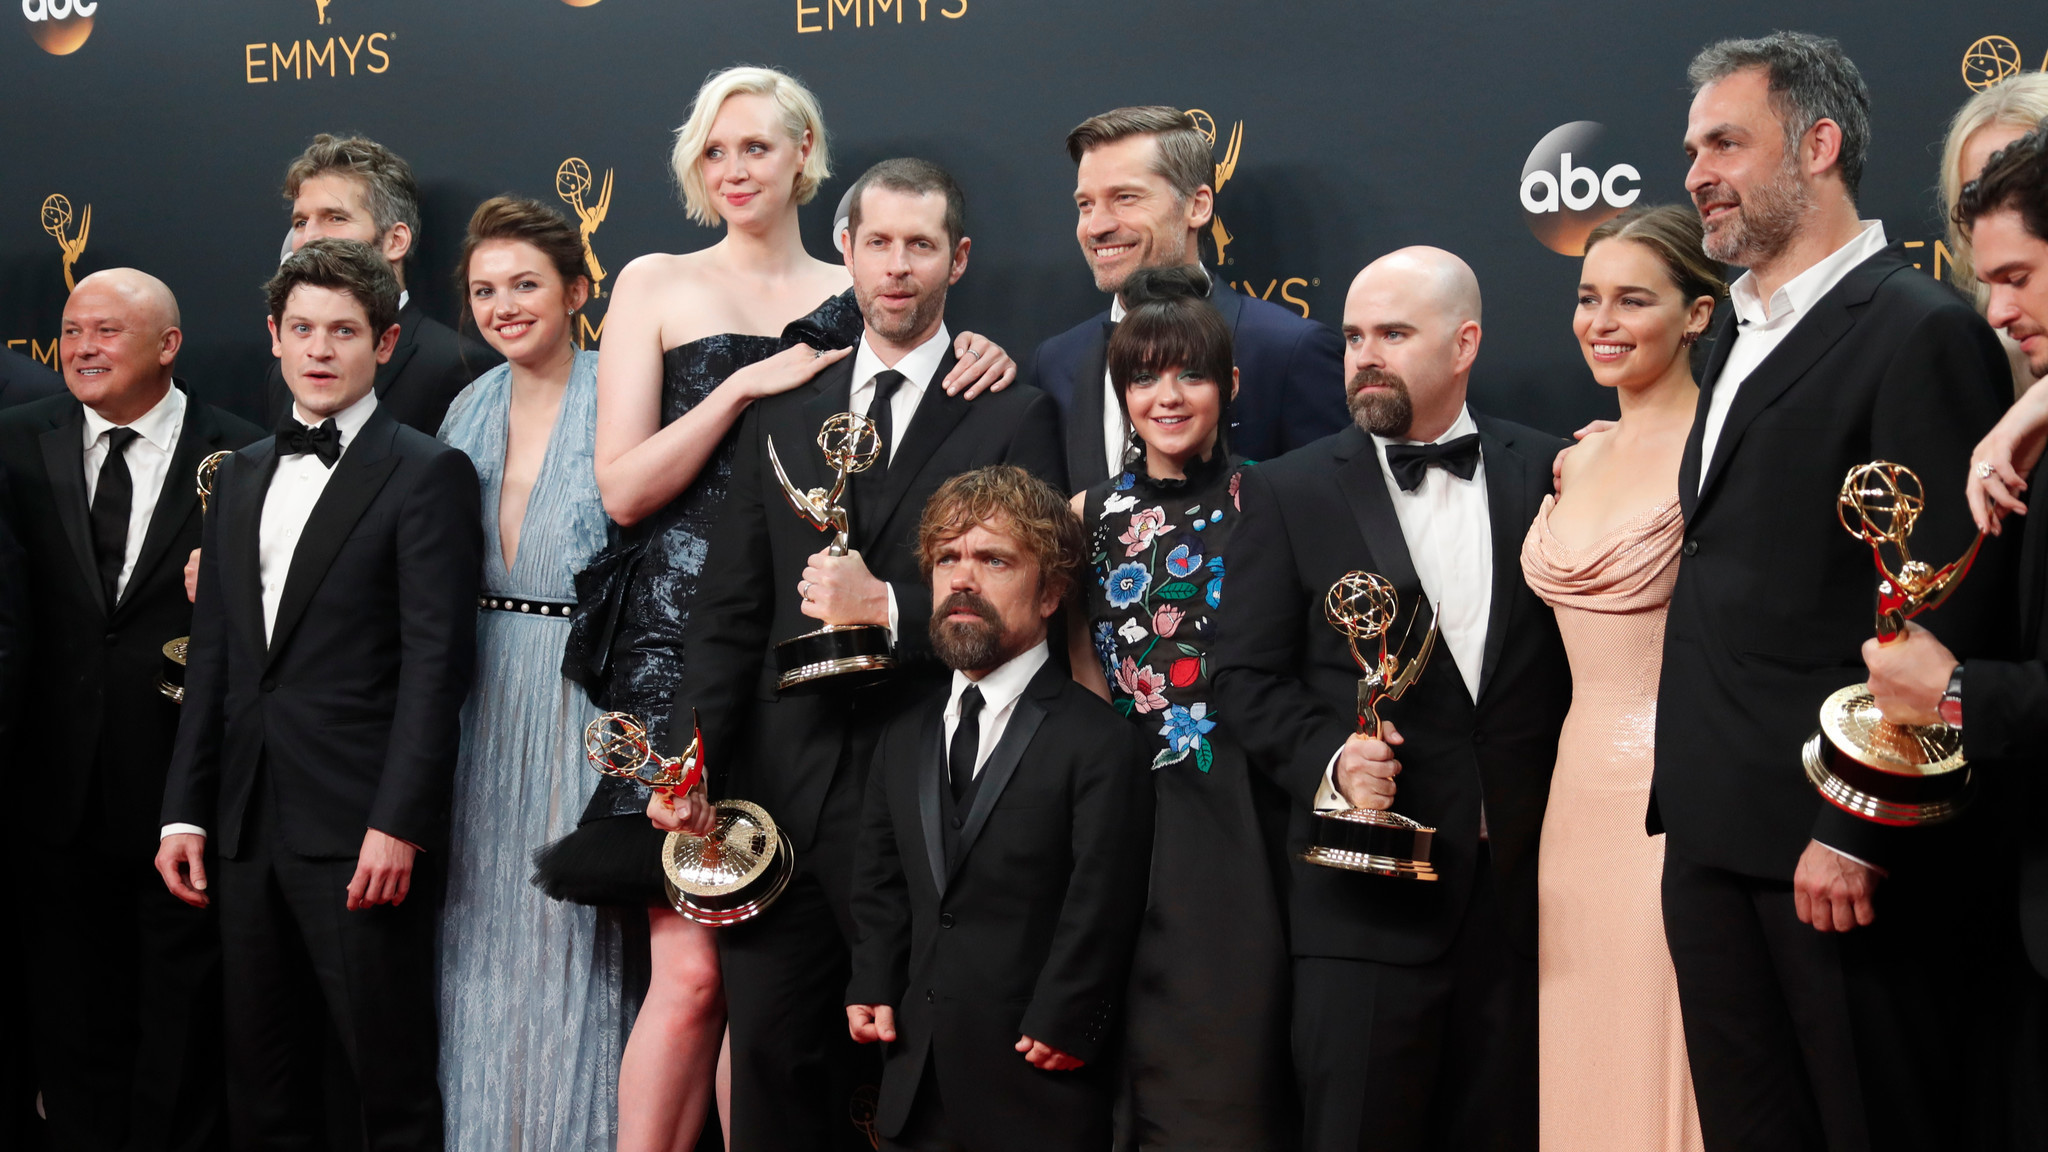 Los Emmys 2016 sacan su lado gayfriendly